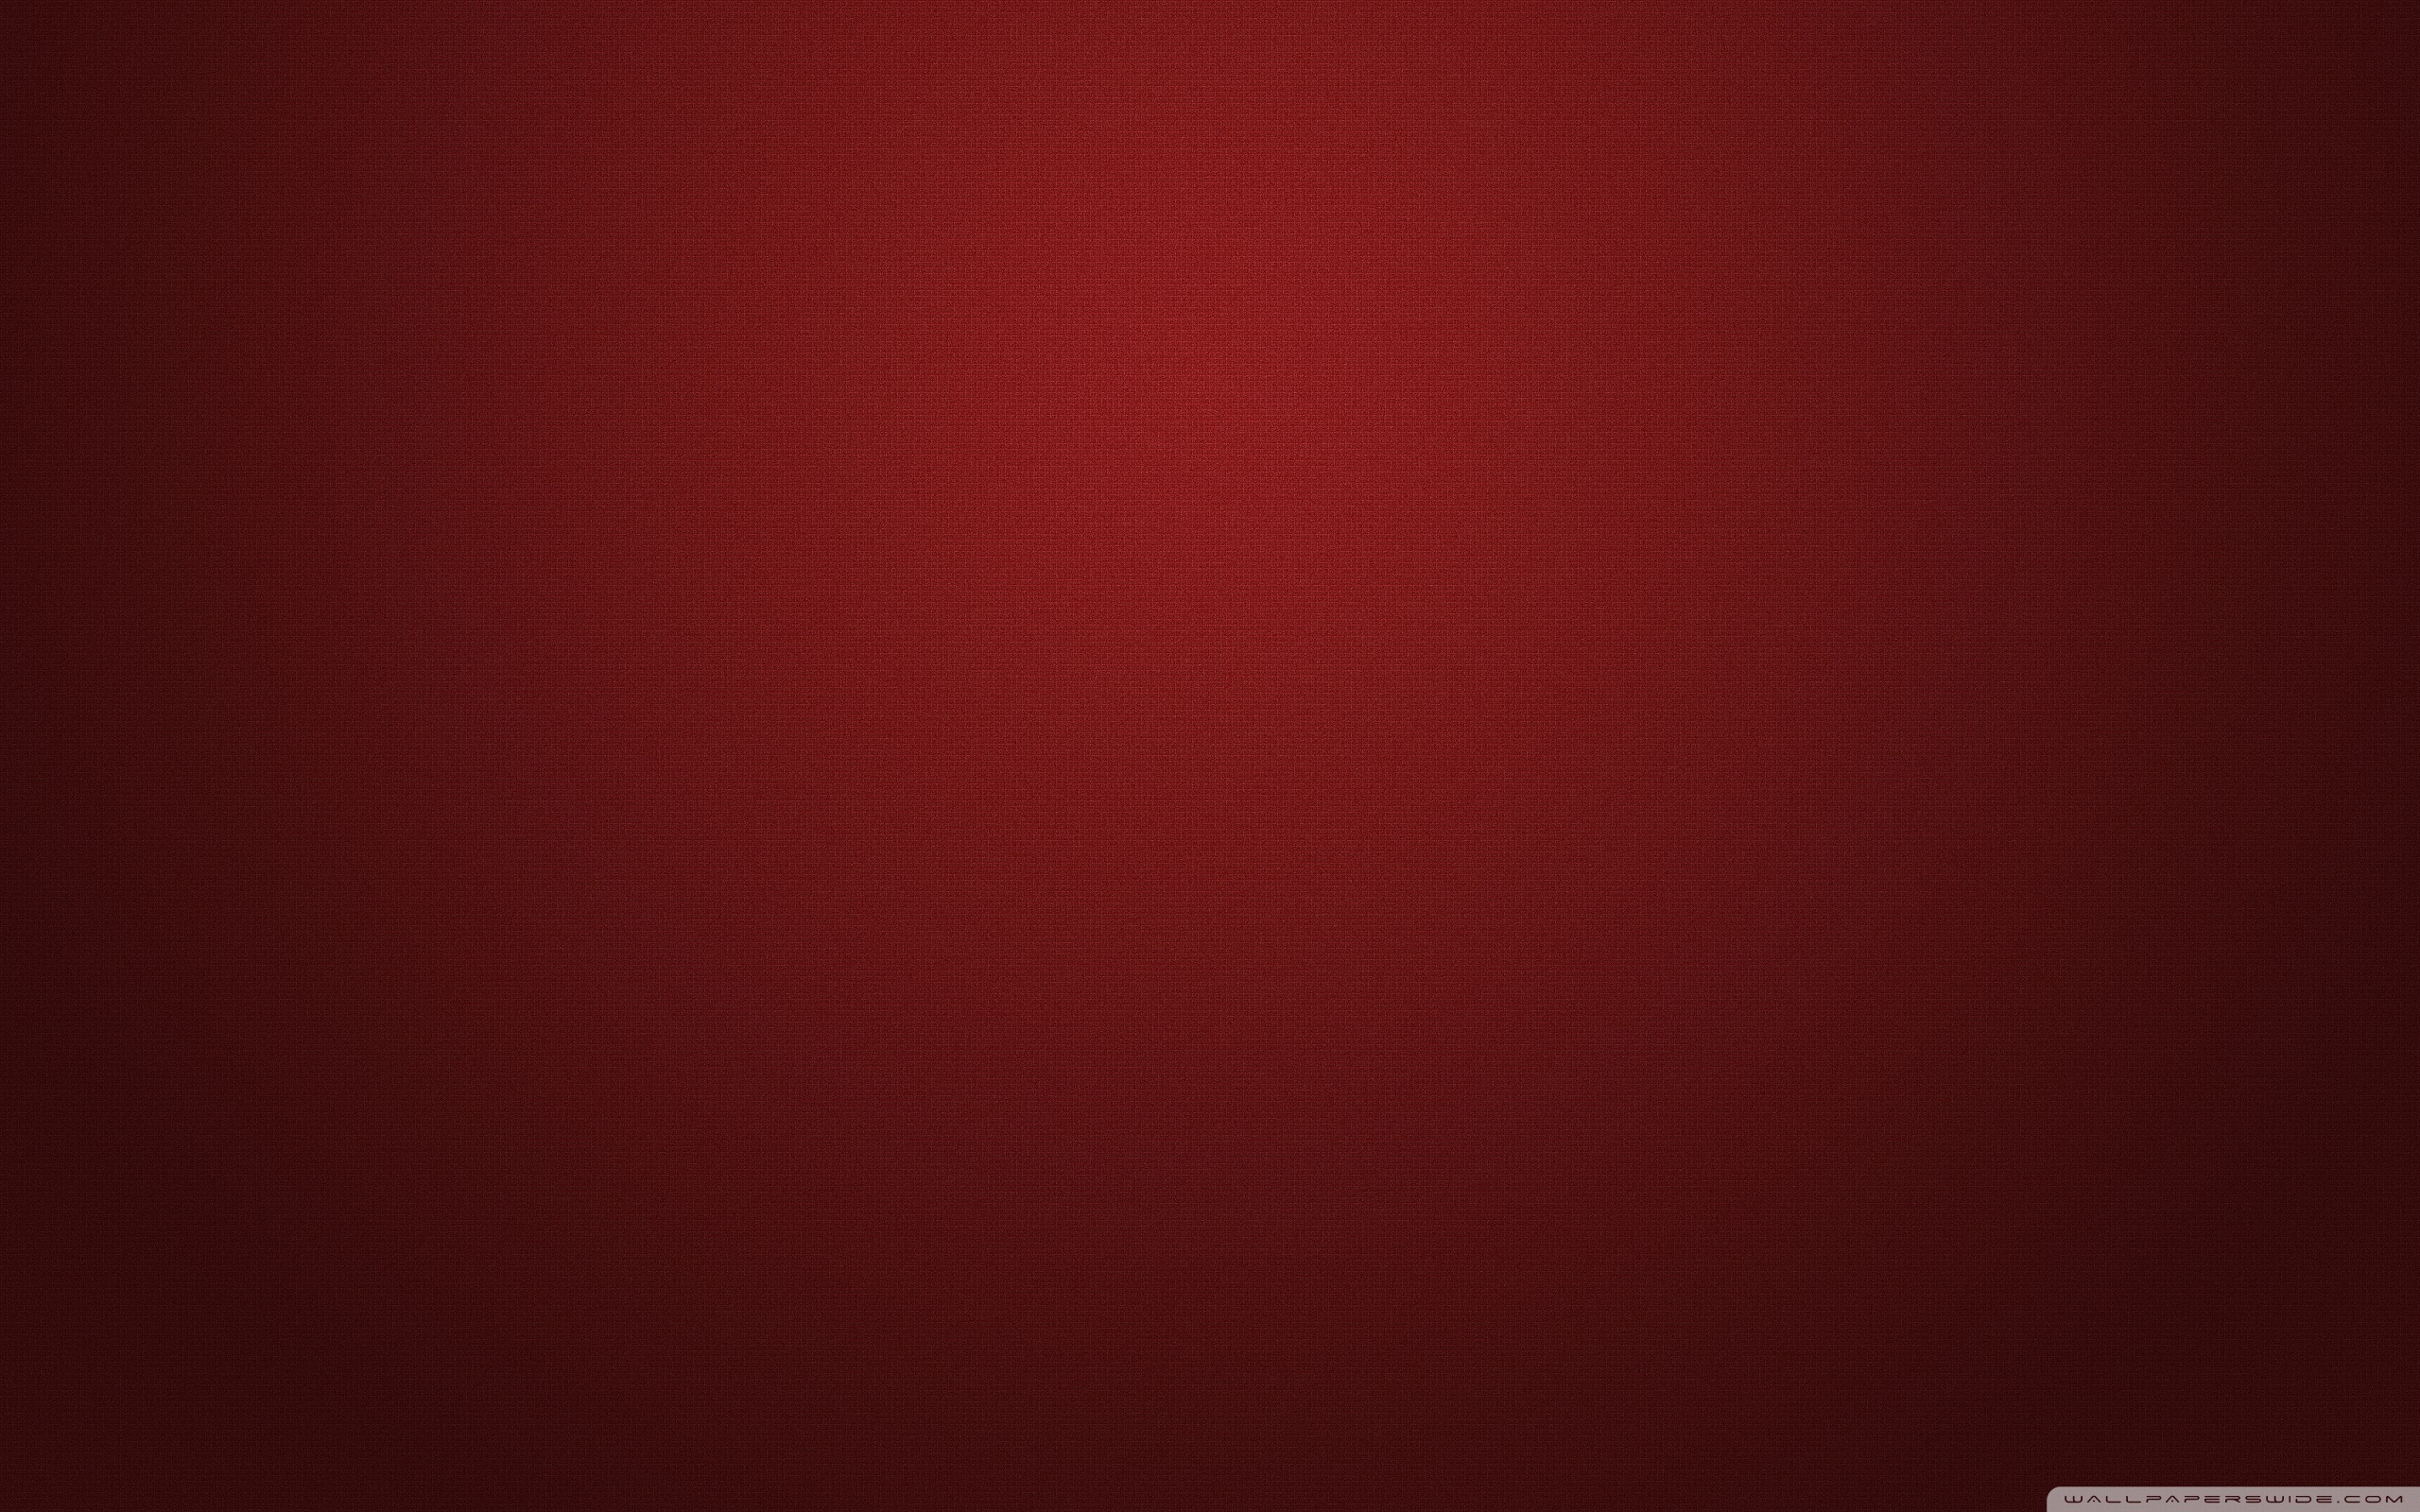 red_cubes-wallpaper-2560x1600.jp